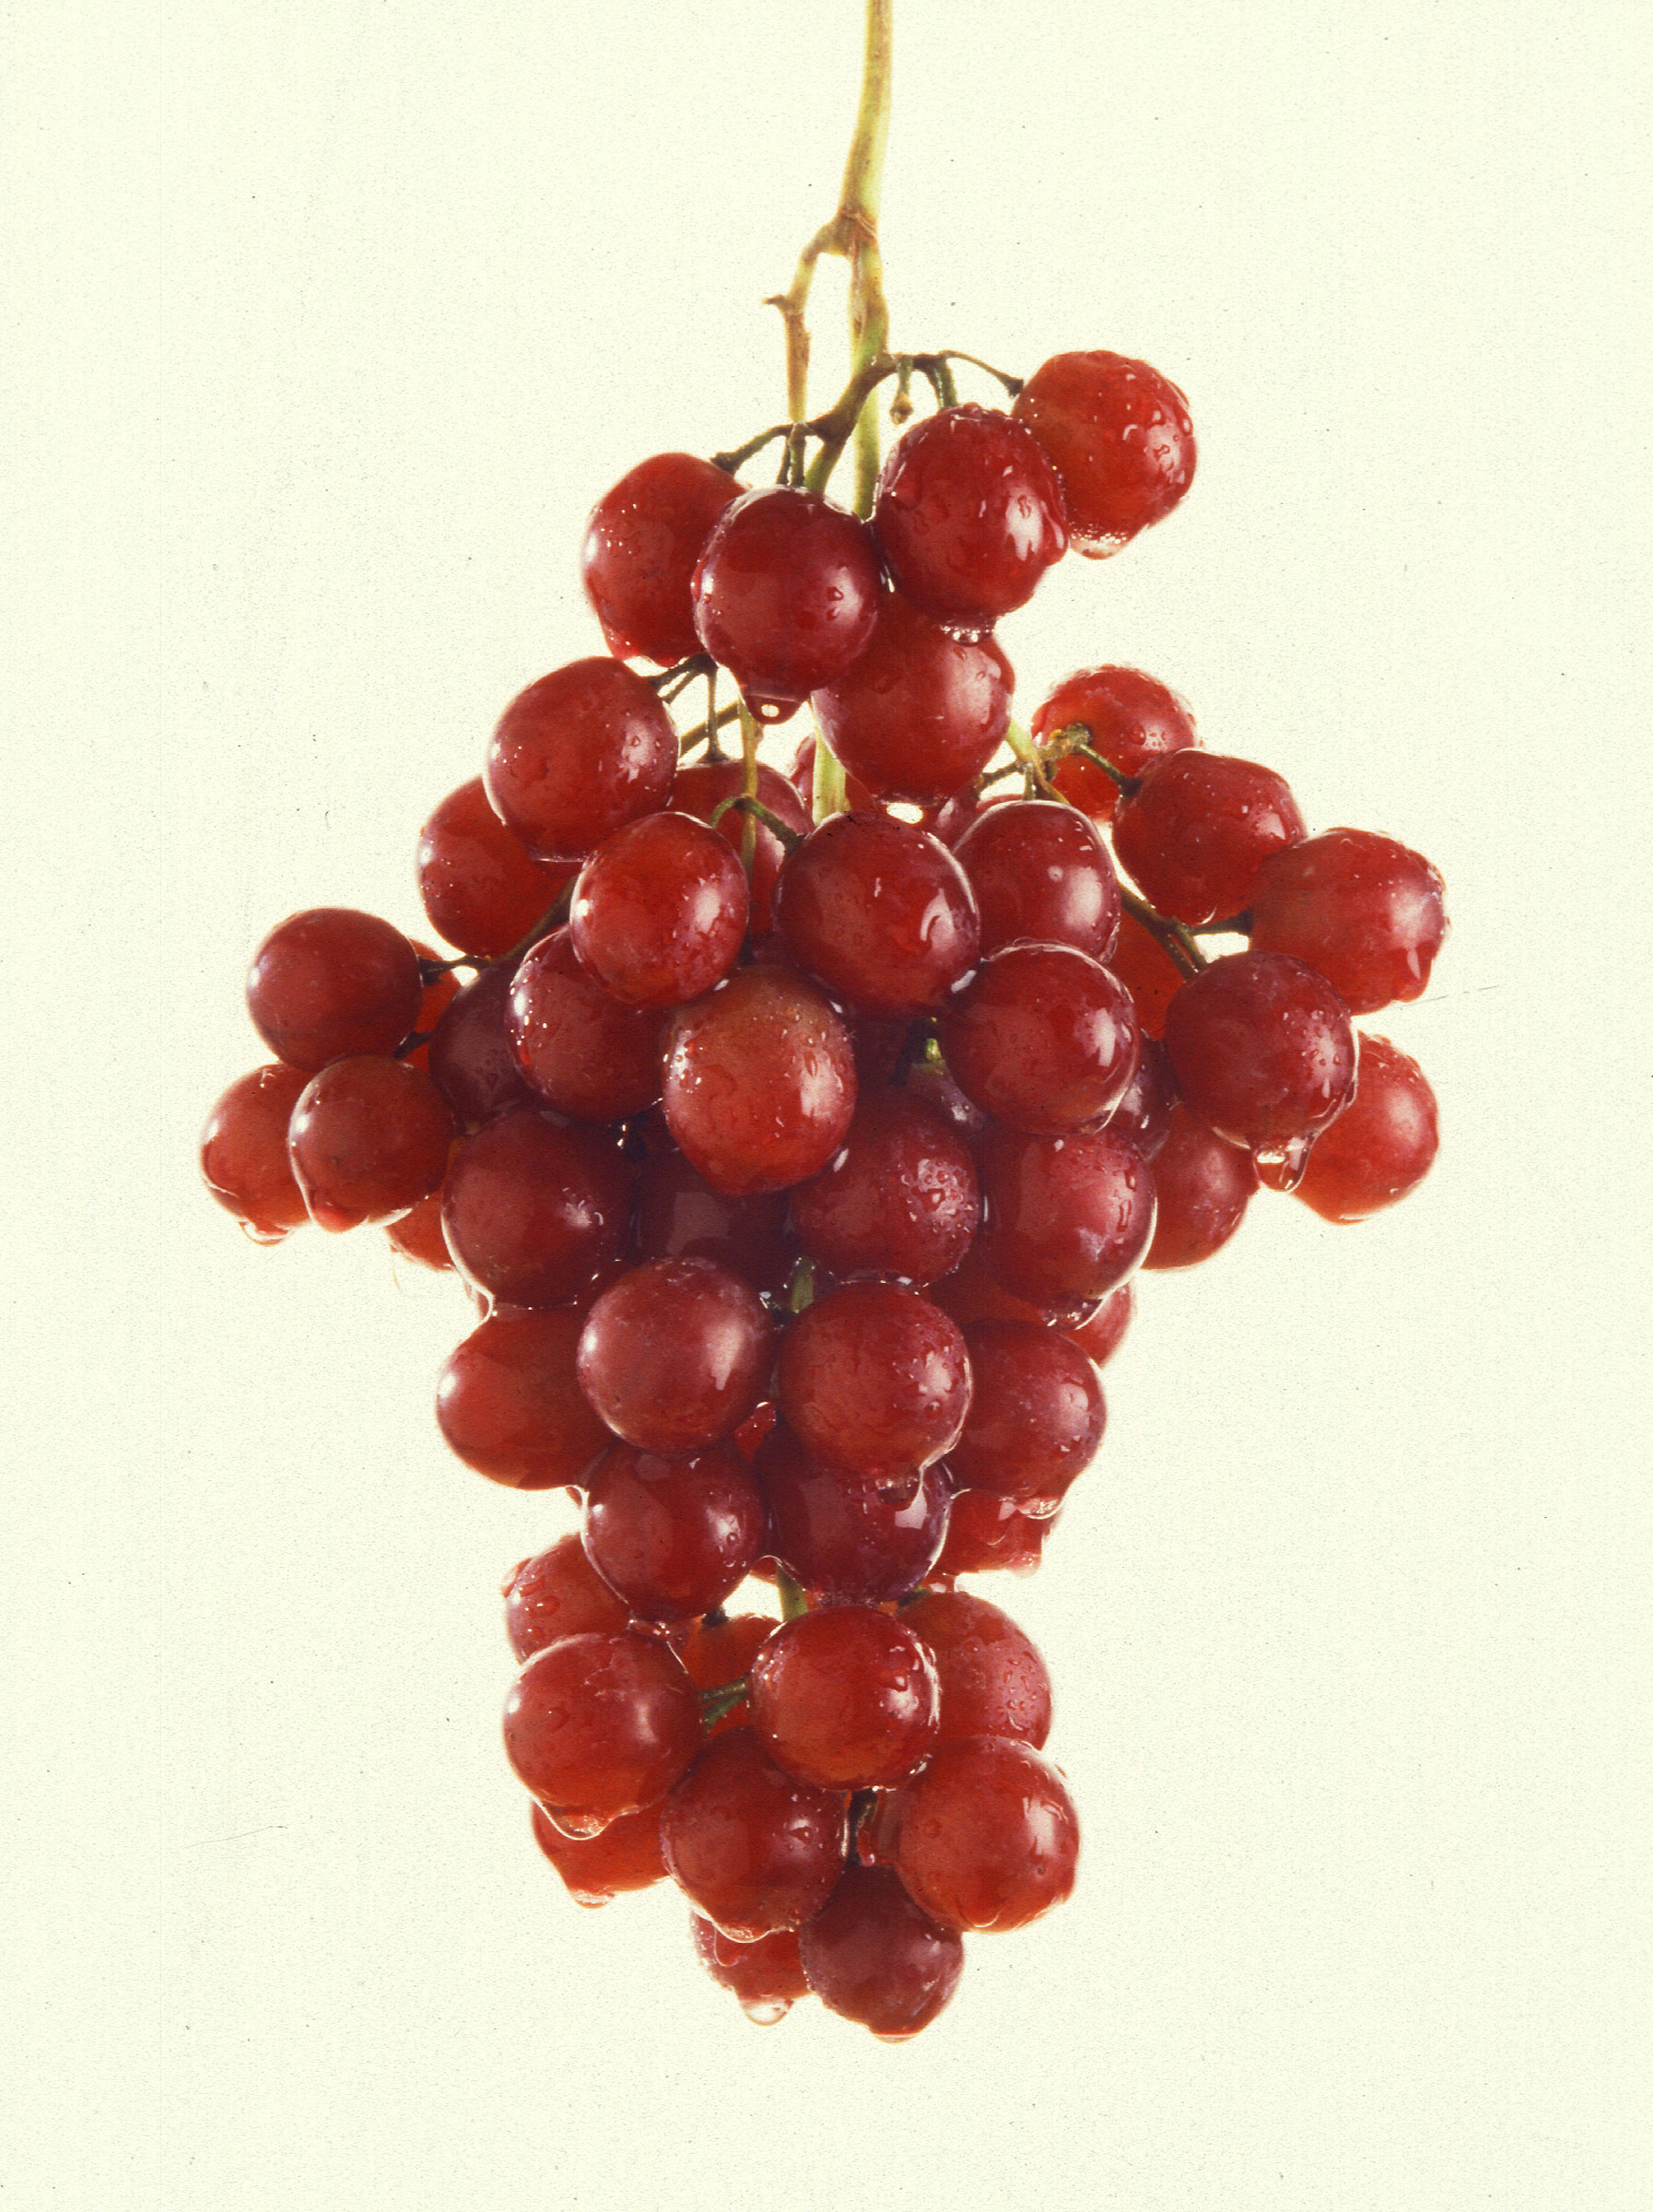 More_grapes.jpg